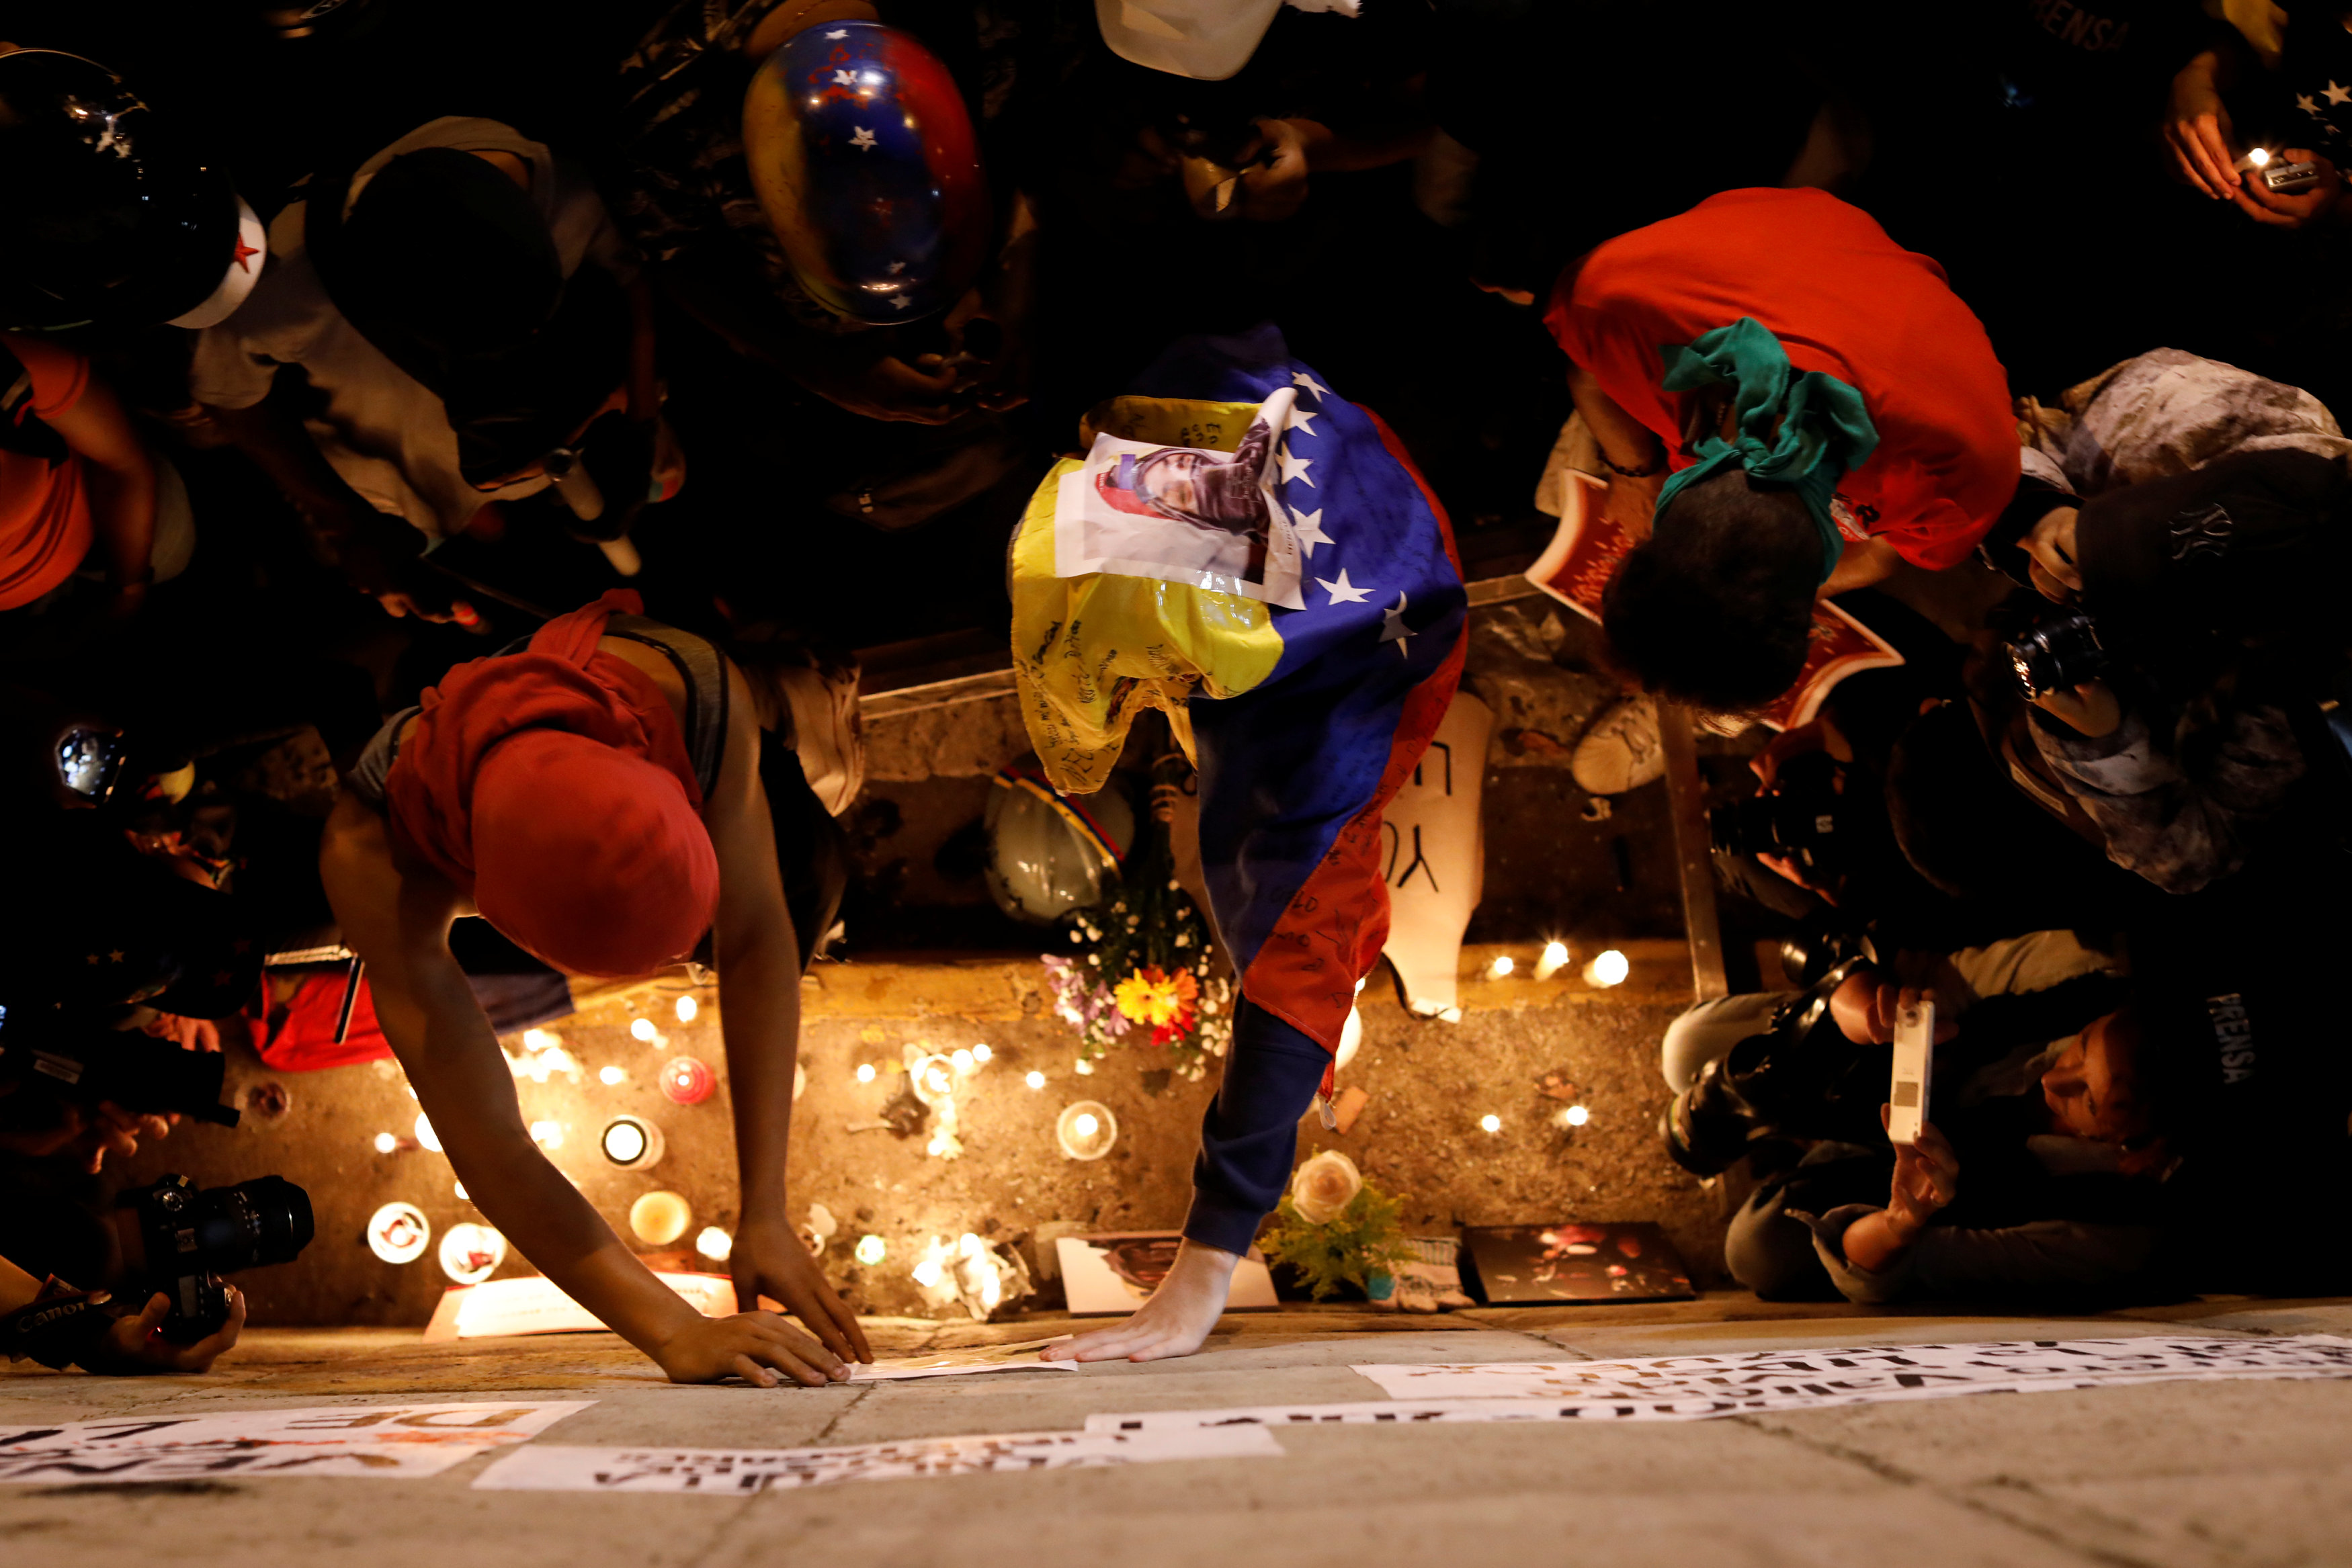 Opositores realizaron una vigilia en honor a Neomar Lander. REUTERS/Carlos Garcia Rawlins